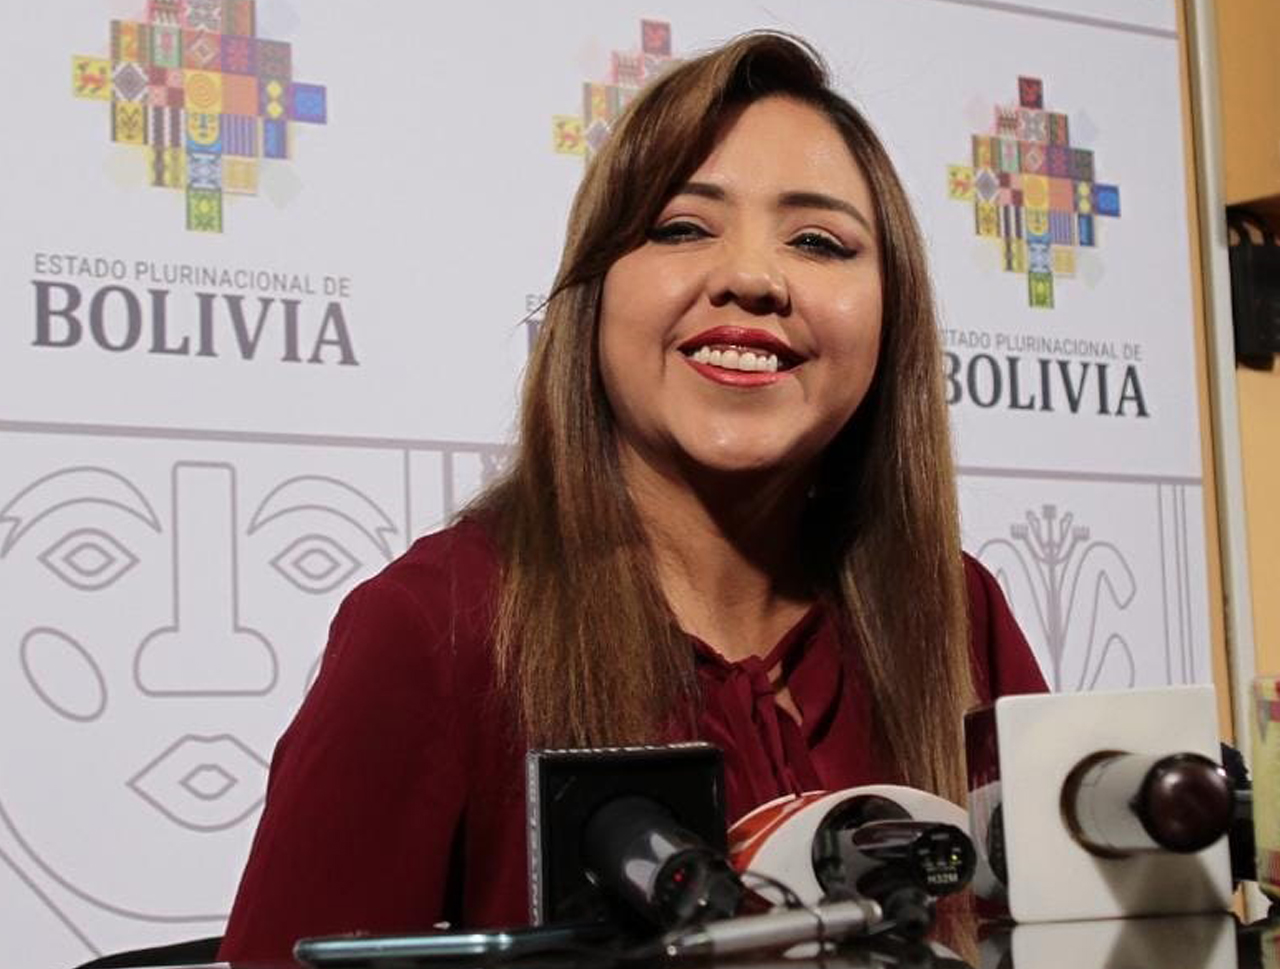 Abi La Viceministra De Comunicación Gabriela Alcón Se Dirige A Los Medios De Comunicación En 8337